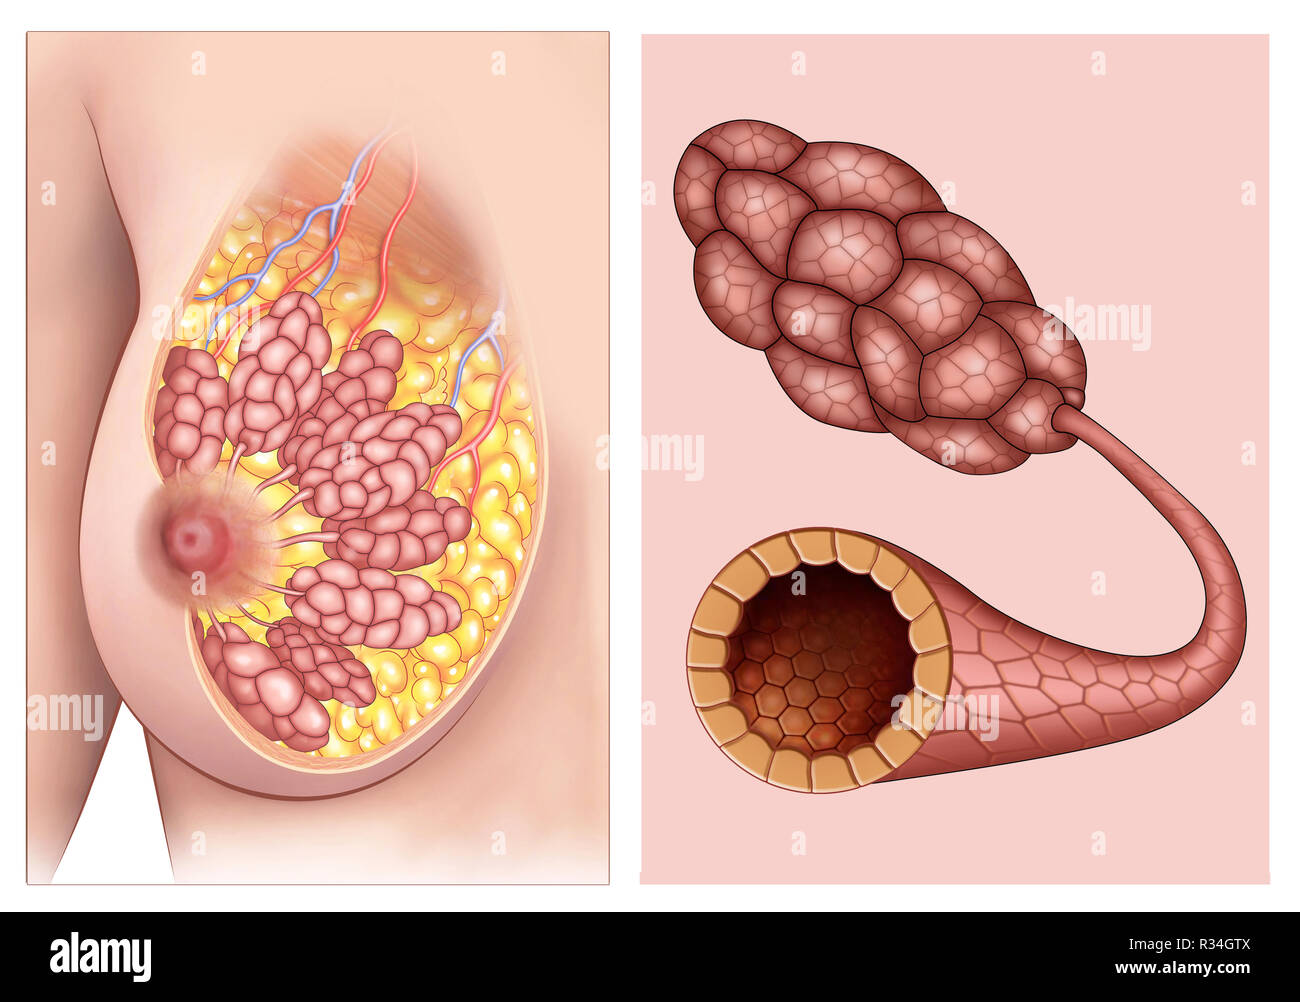 Anatomia de los pechos de mujer, en la que se puede ver lobulos claramente los y conductos mamarios. Banque D'Images